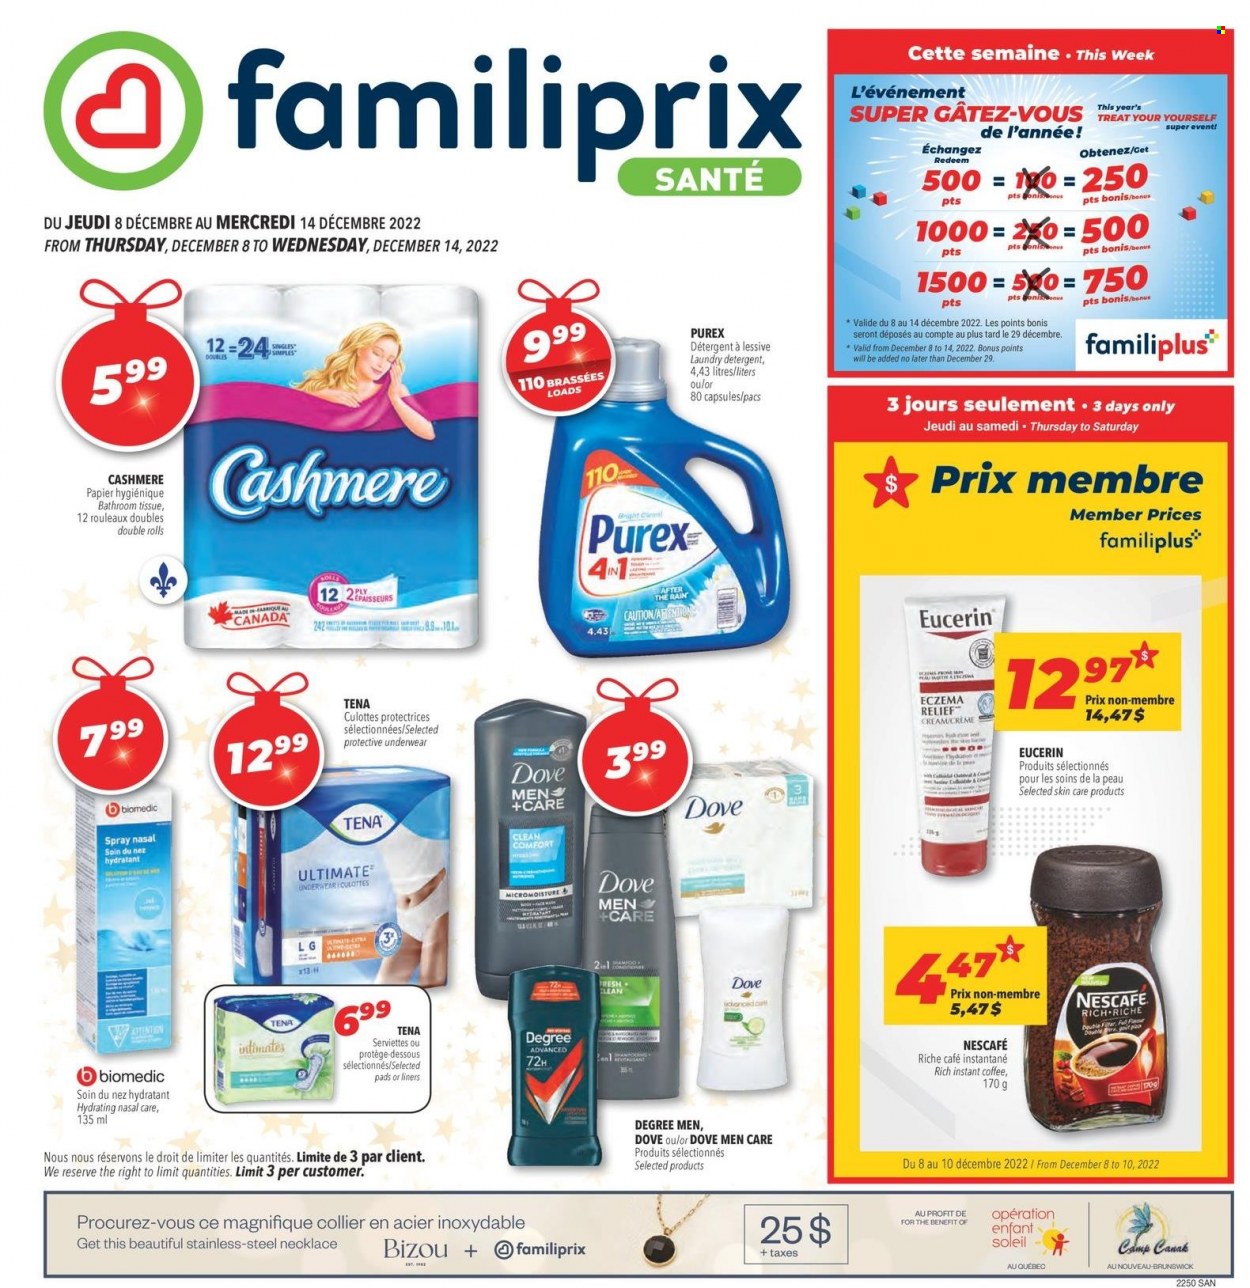 Familiprix Santé flyer  - December 08, 2022 - December 14, 2022.